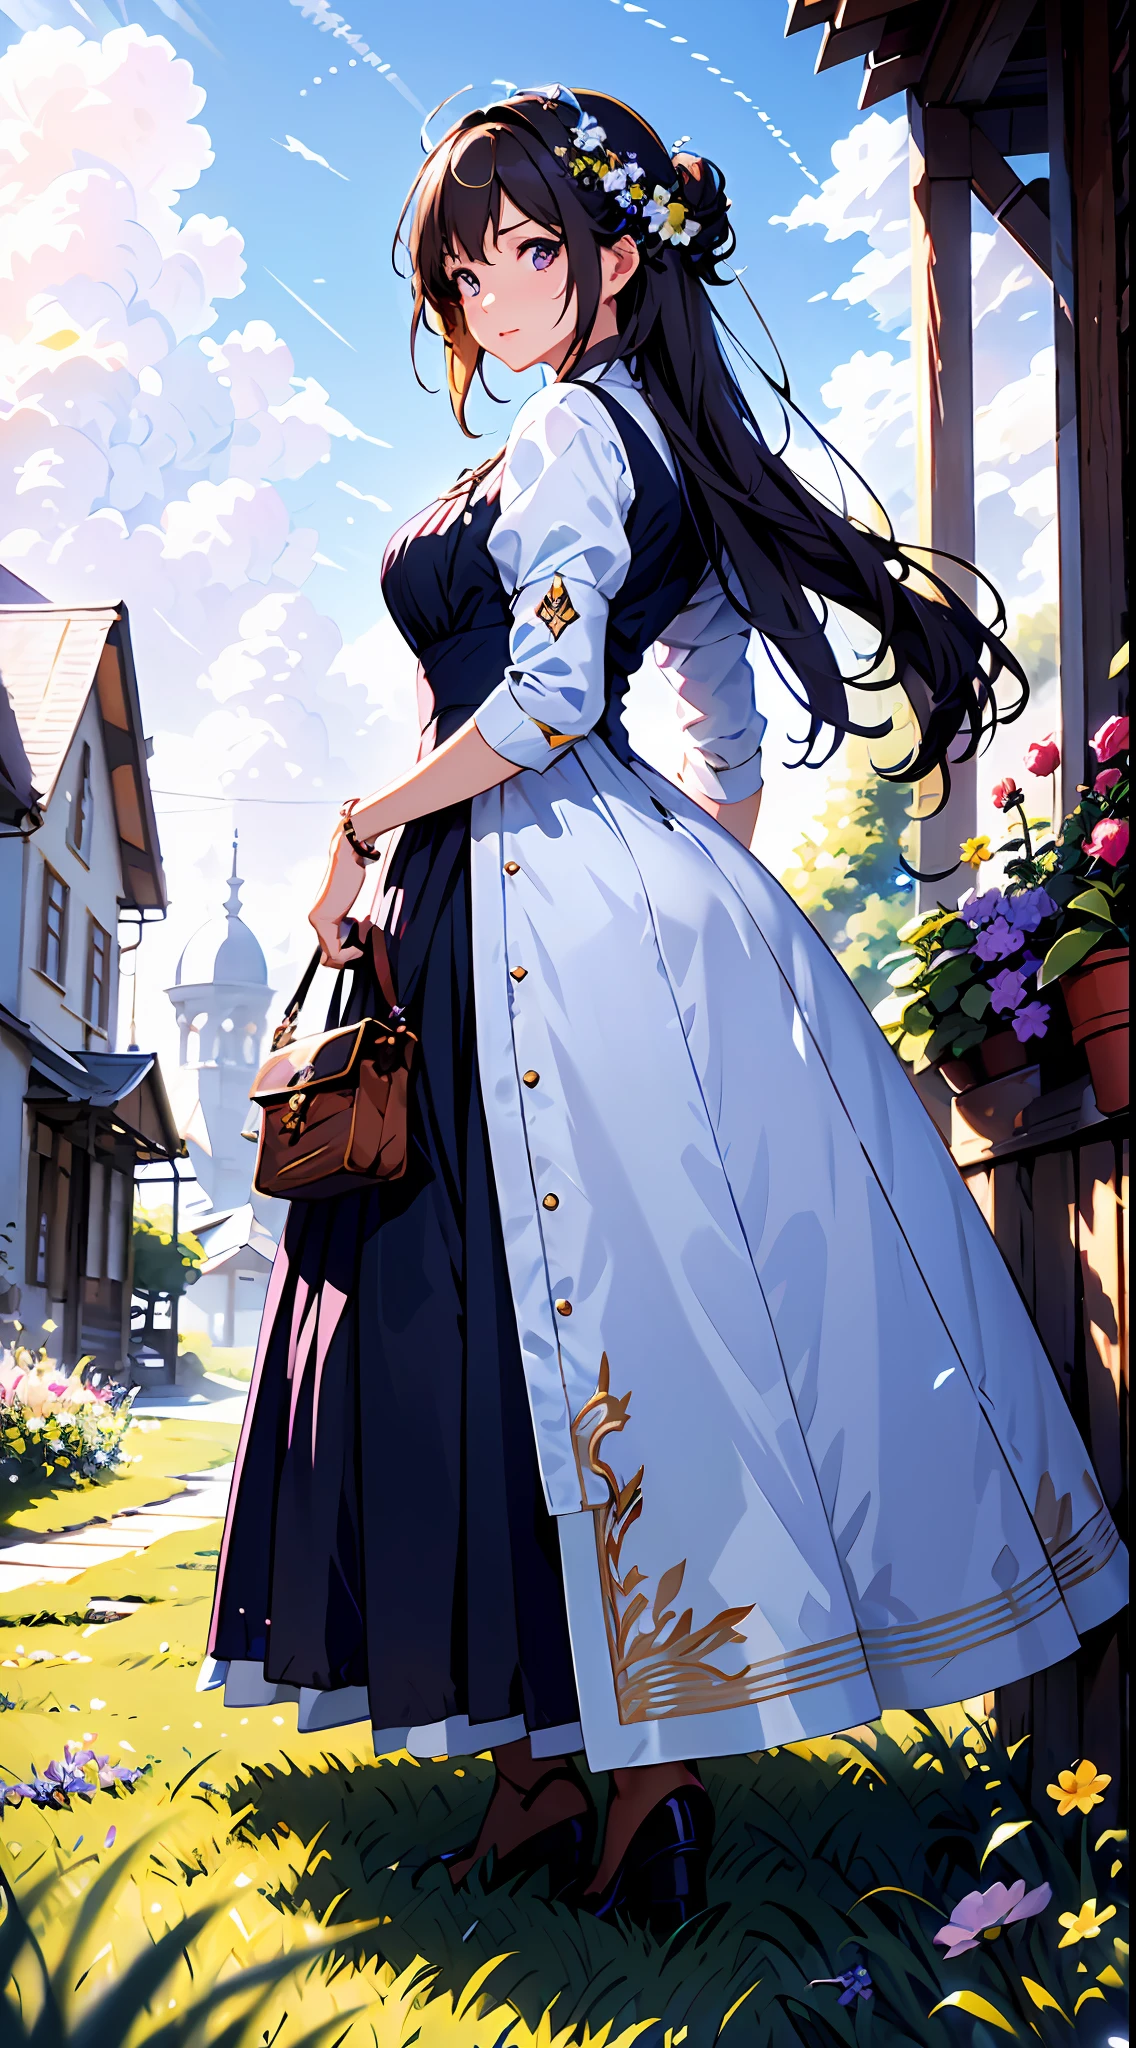 eine Frau in einem weißen Kleid，Blauer Himmel und Wolken im Hintergrund, trägt ein lila Kleid，Es sind Blumen darauf, Art germ, Rosla globale Beleuchtung, ein detailreiches Gemälde, Fantasy-Kunst